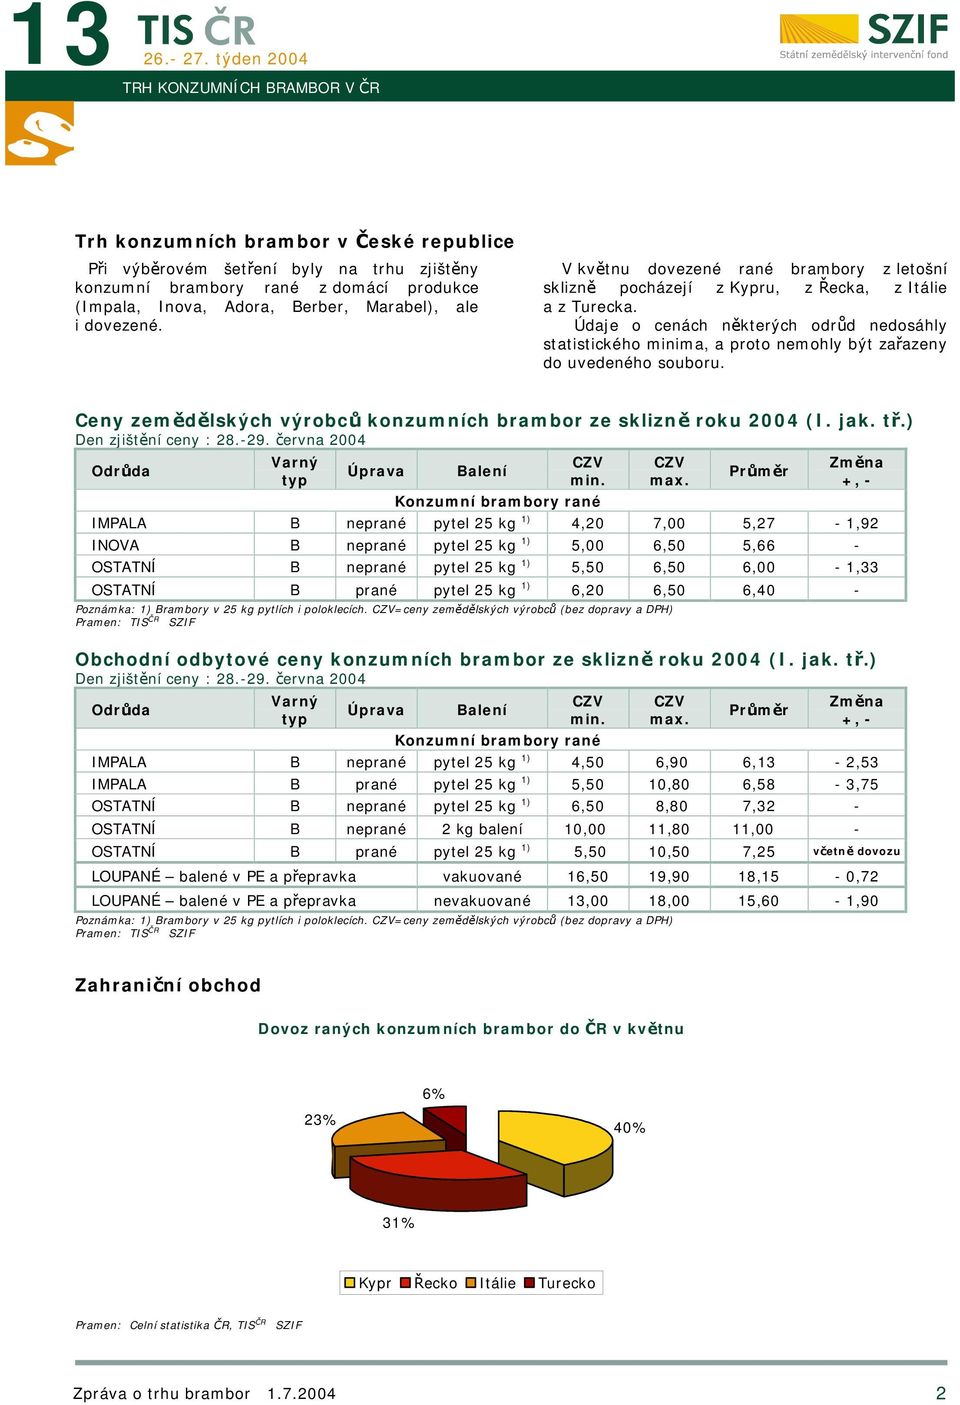 Údaje o cenách některých odrůd nedosáhly statistického minima, a proto nemohly být zařazeny do uvedeného souboru. Ceny zemědělských výrobců konzumních brambor ze sklizně roku 2004 (I. jak. tř.